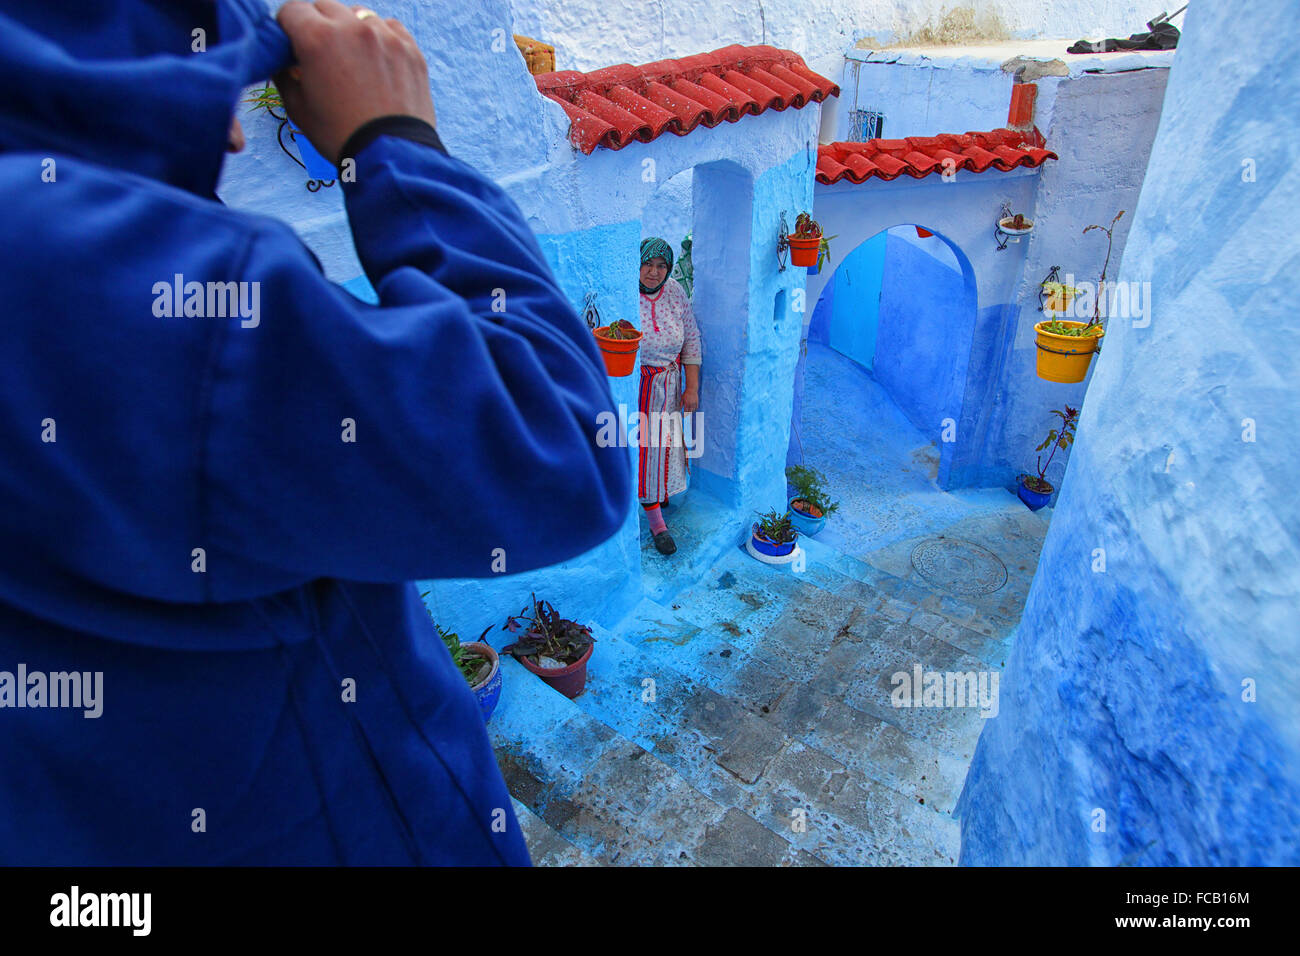 Les murs bleu de Chefchaouen, Maroc, qui se trouve dans les contreforts des montagnes du Rif. Banque D'Images